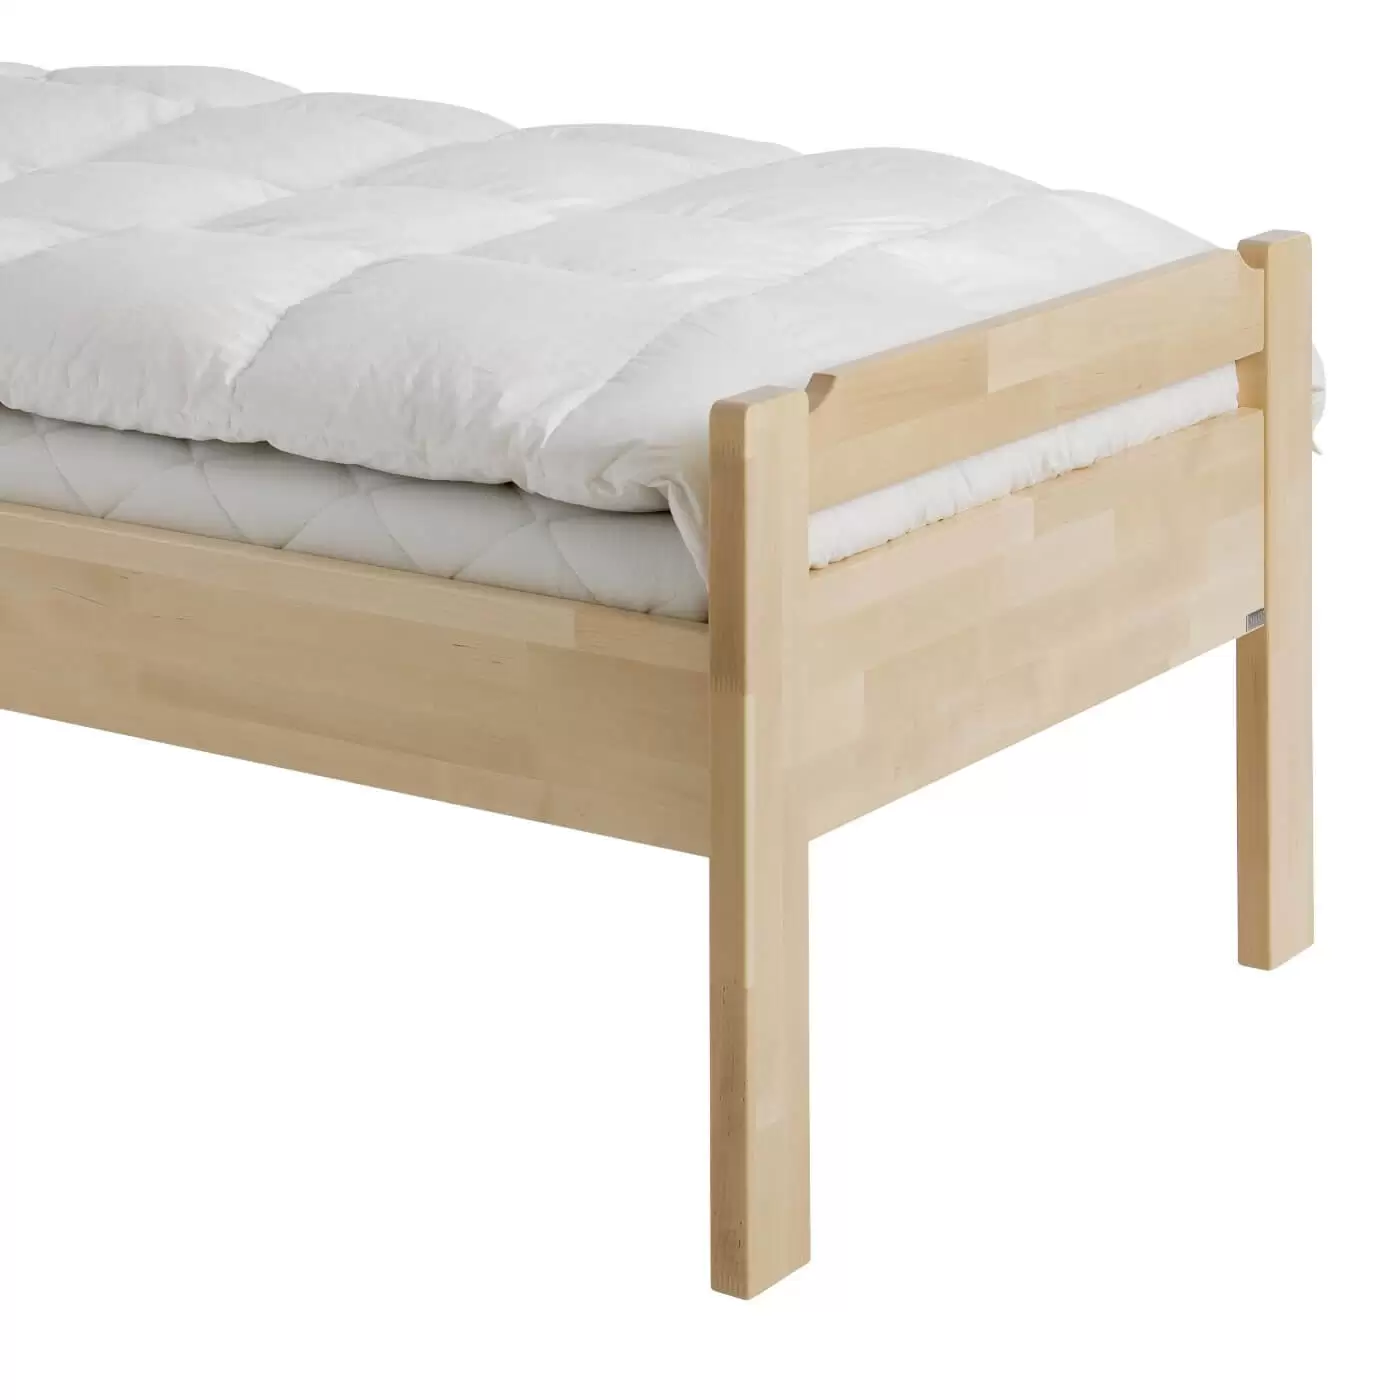 Łóżko z niskim zagłówkiem KUUSAMO drewniane jednoosobowe. Przybliżony widok na wysokie proste nogi łóżka z jasnego drewna brzozy skandynawskiej